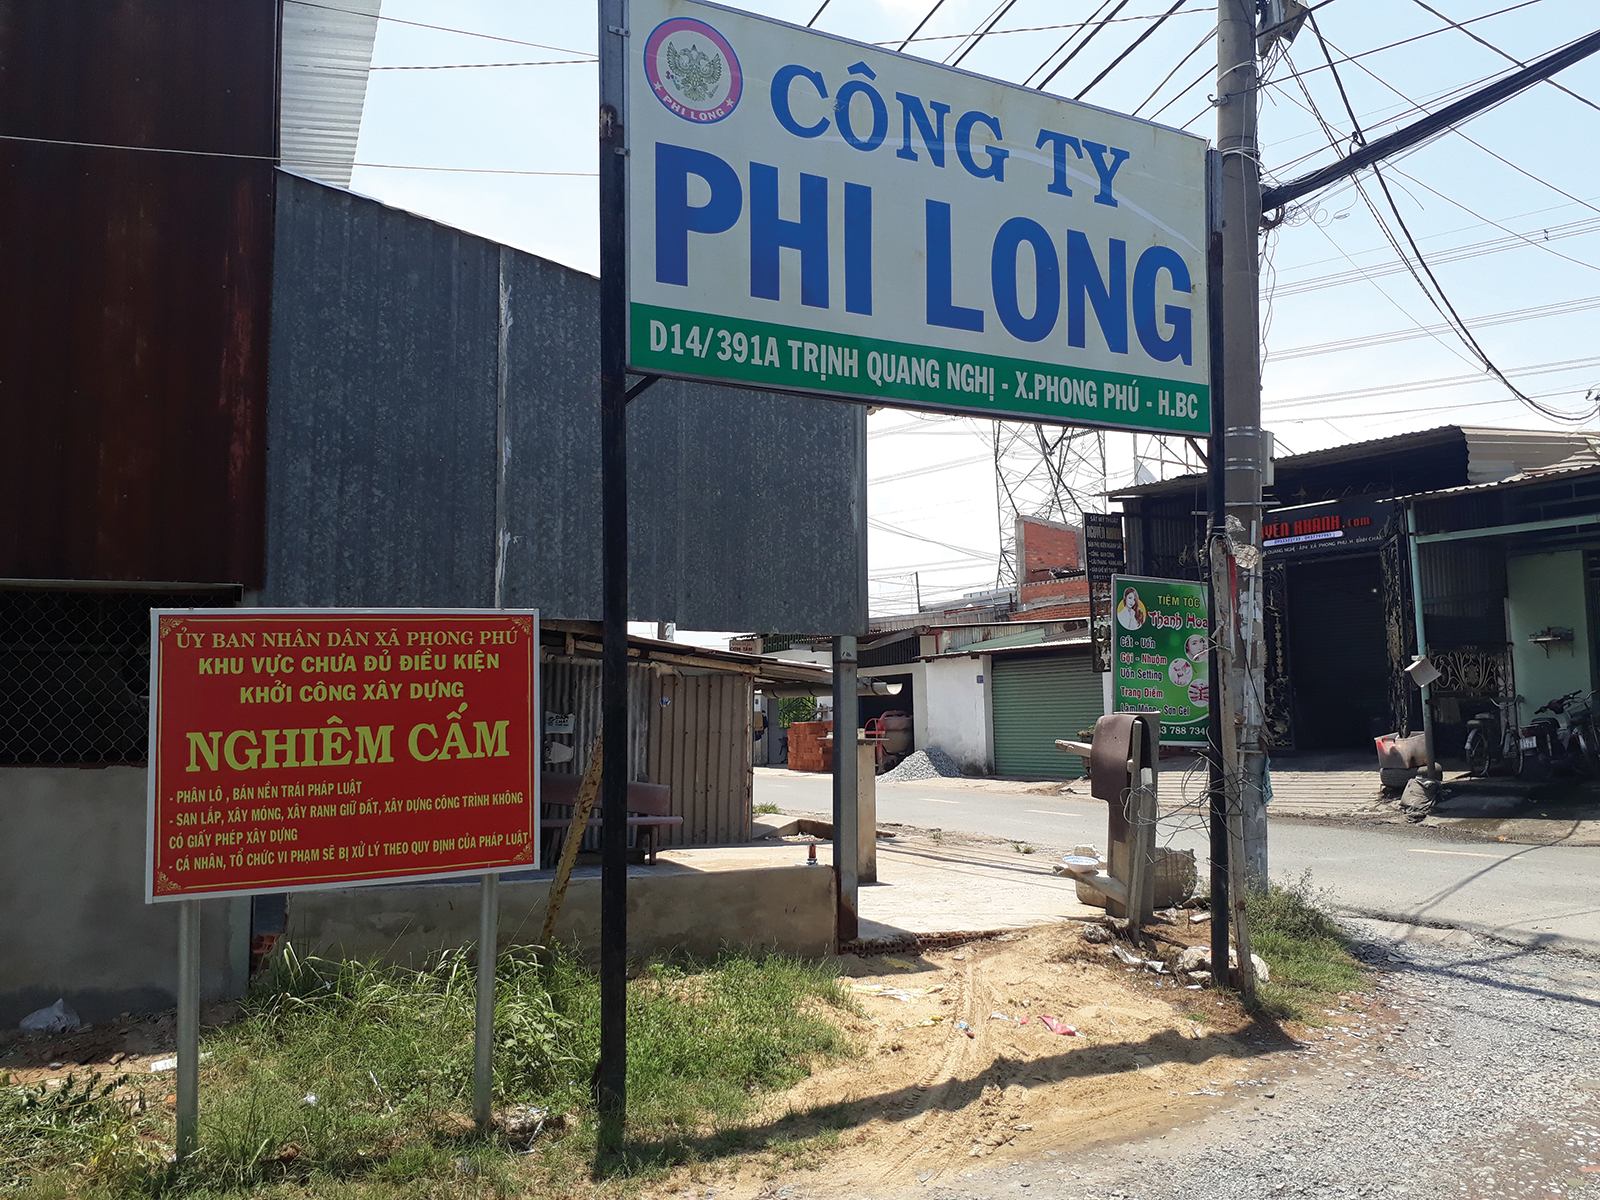 Công ty Phi Long: Khách hàng “long đong” sau sáp nhập